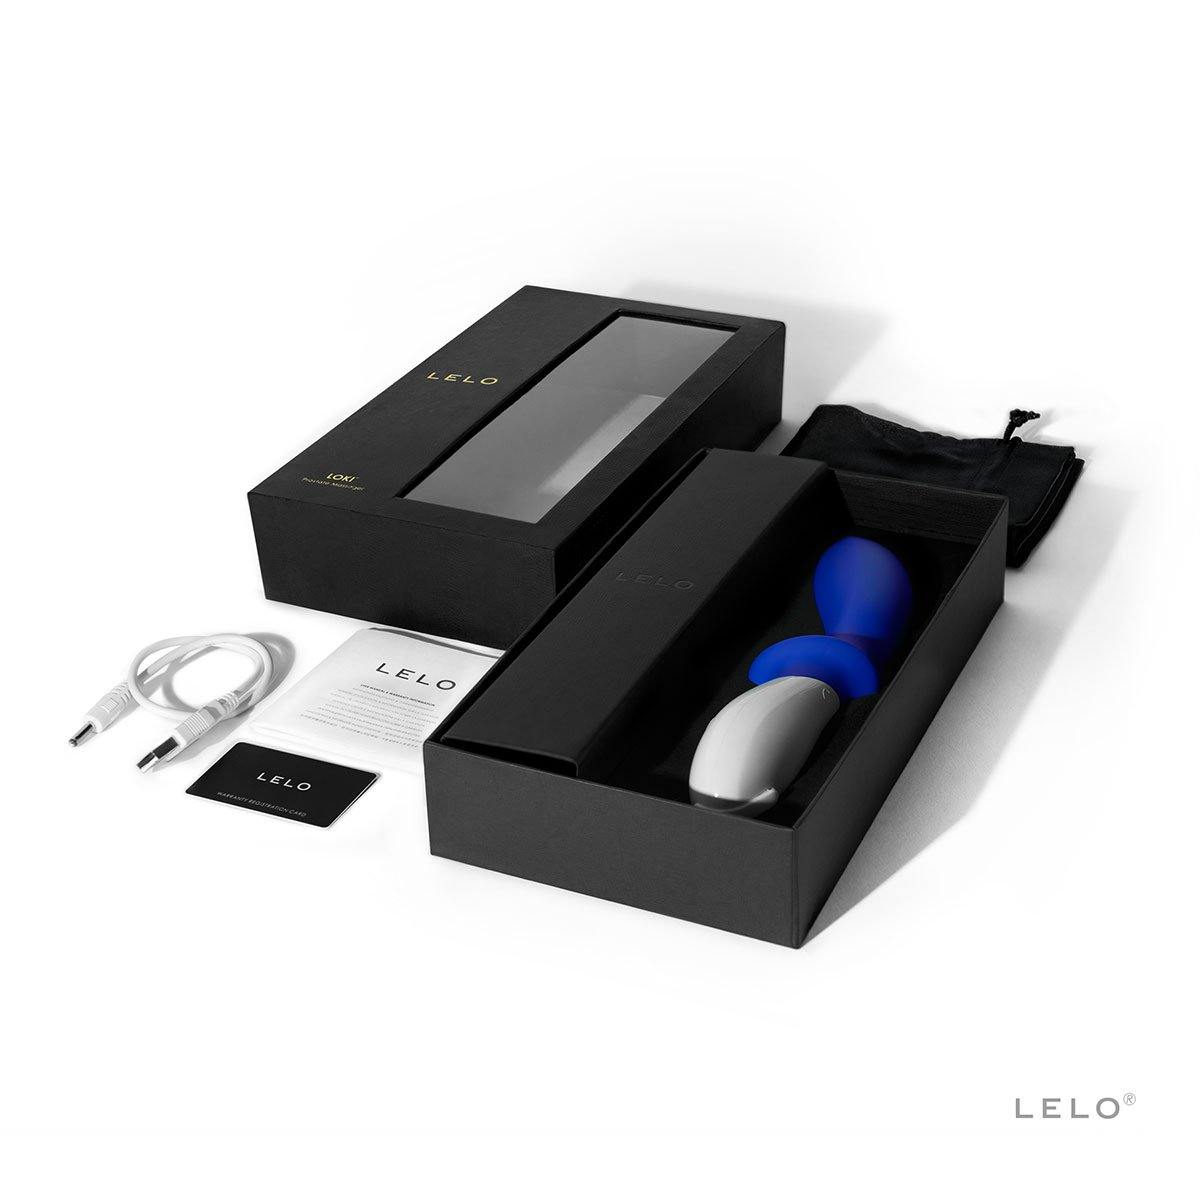 Lelo Loki - Buy At Luxury Toy X - Free 3-Day Shipping